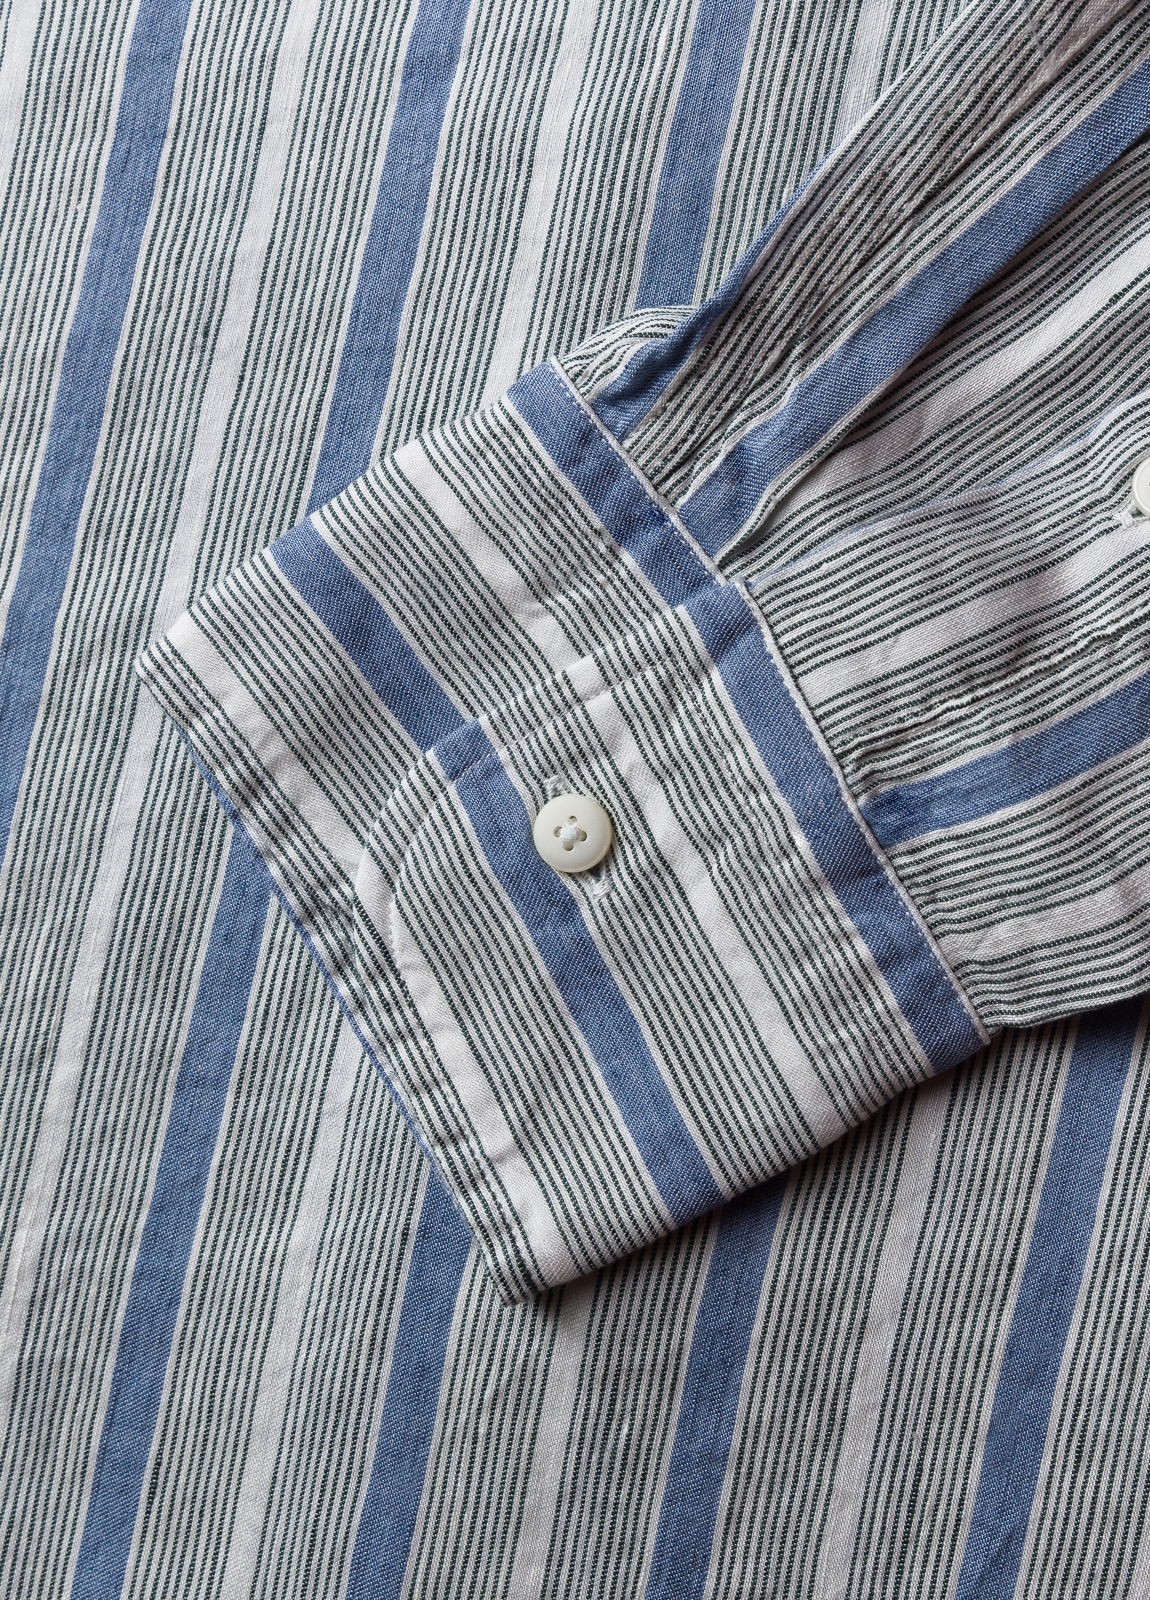 Camisa sport FUREST COLECCIÓN lino rayas azul y gris - Ítem2